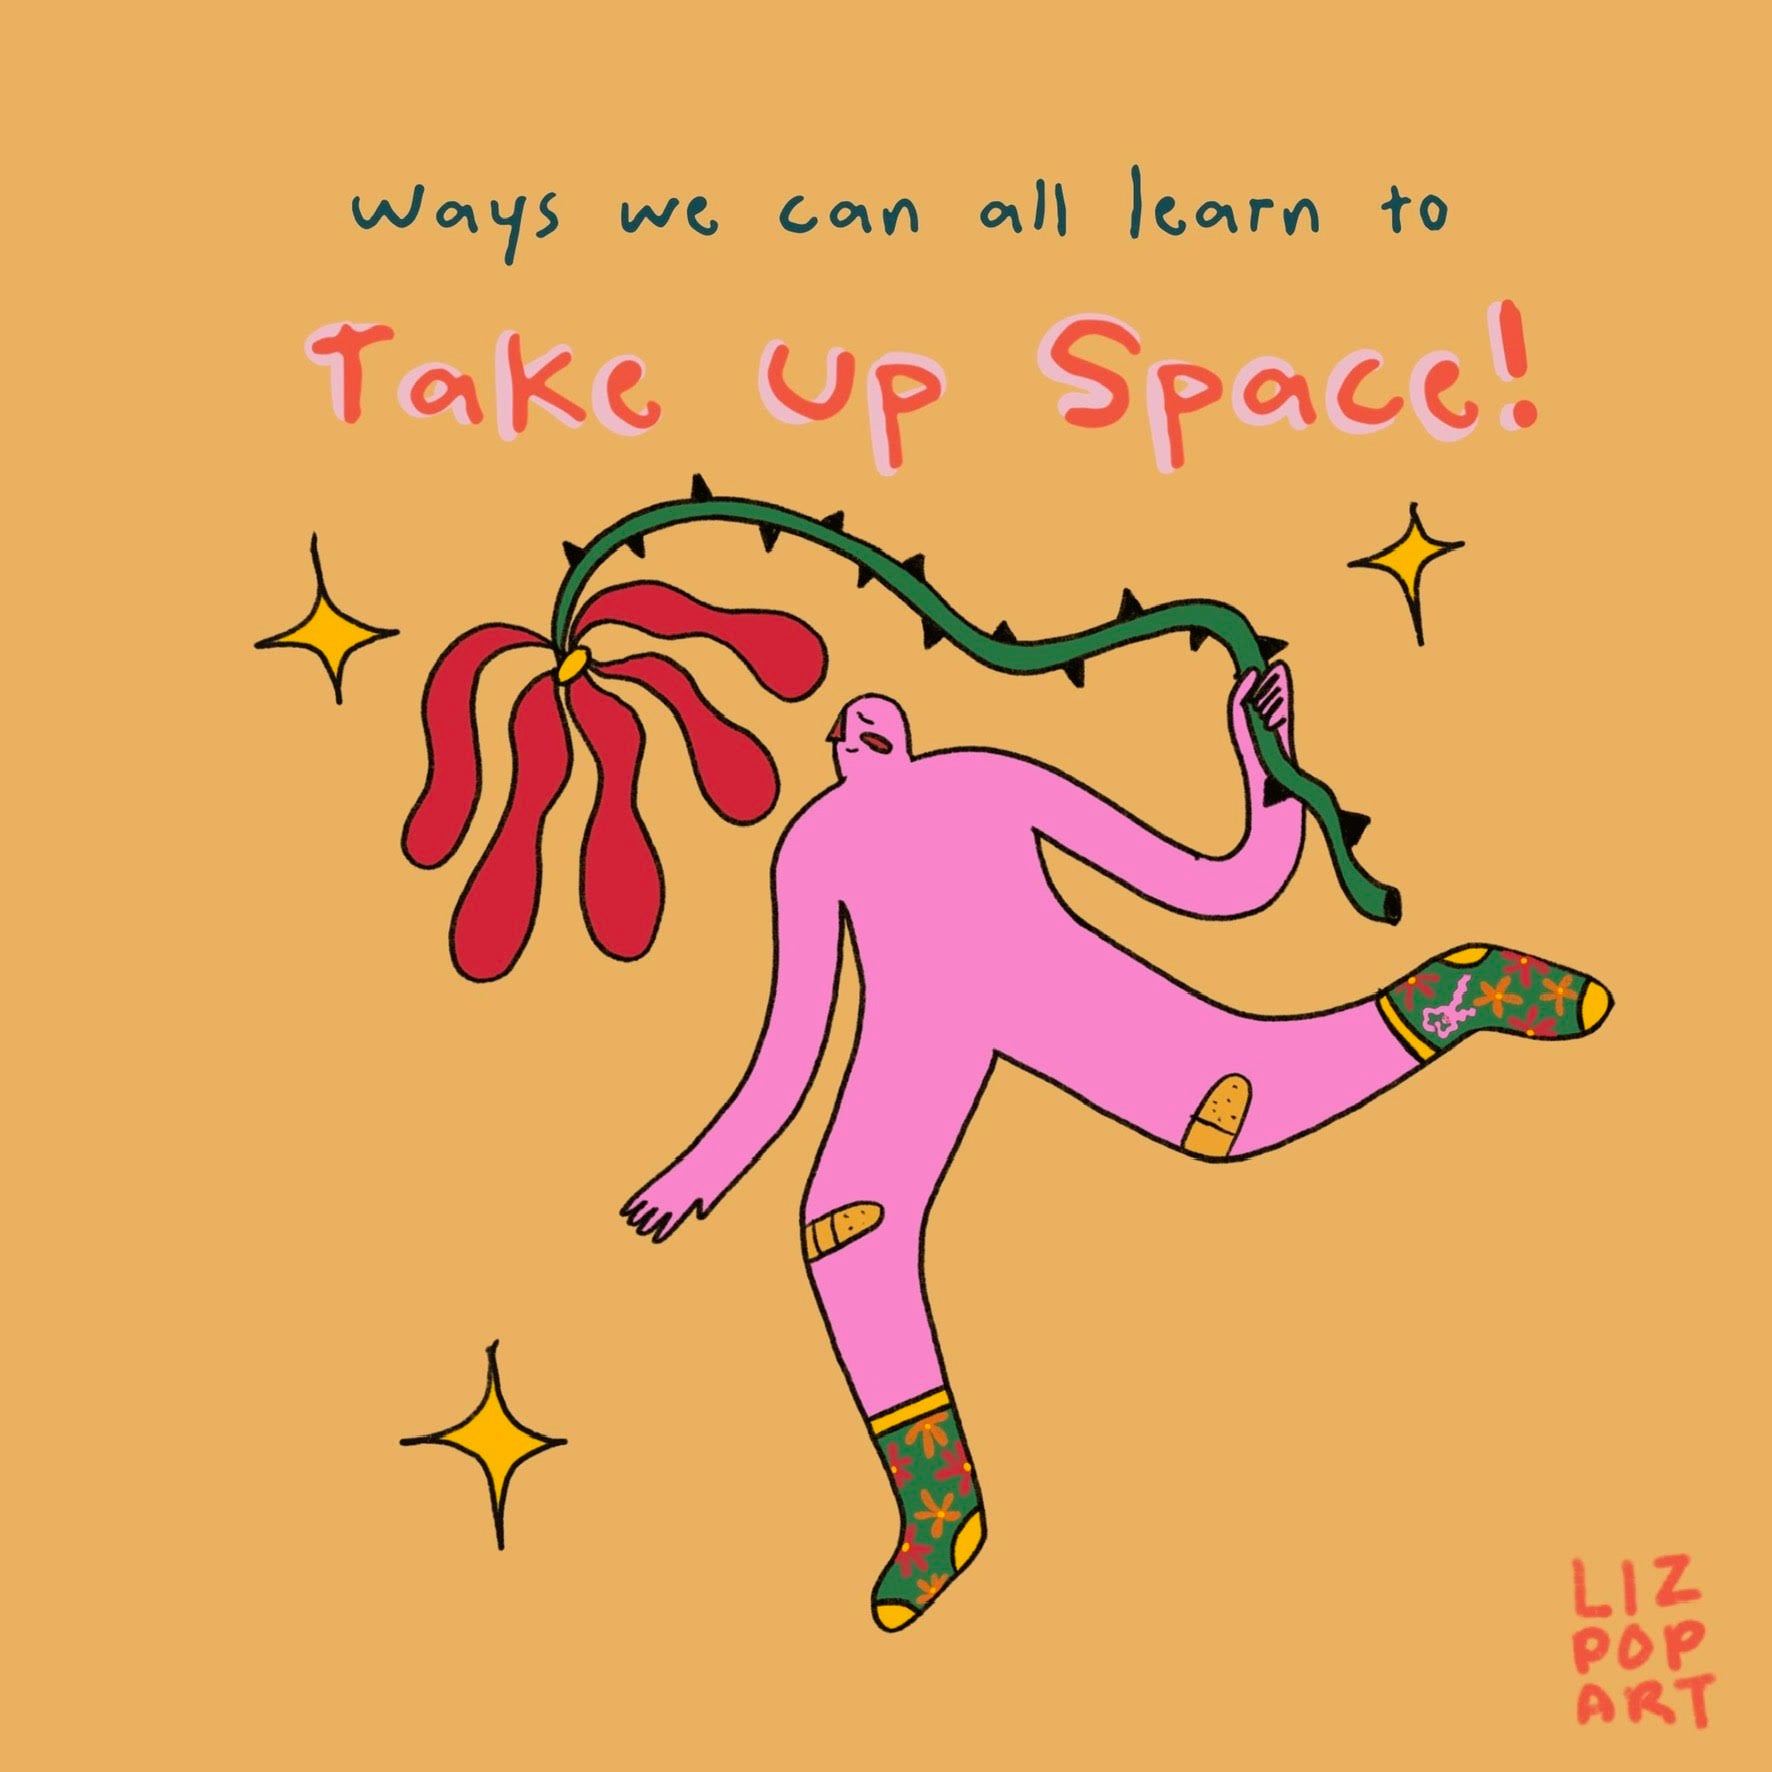 Liz Pop Art - Take Up Space Crews